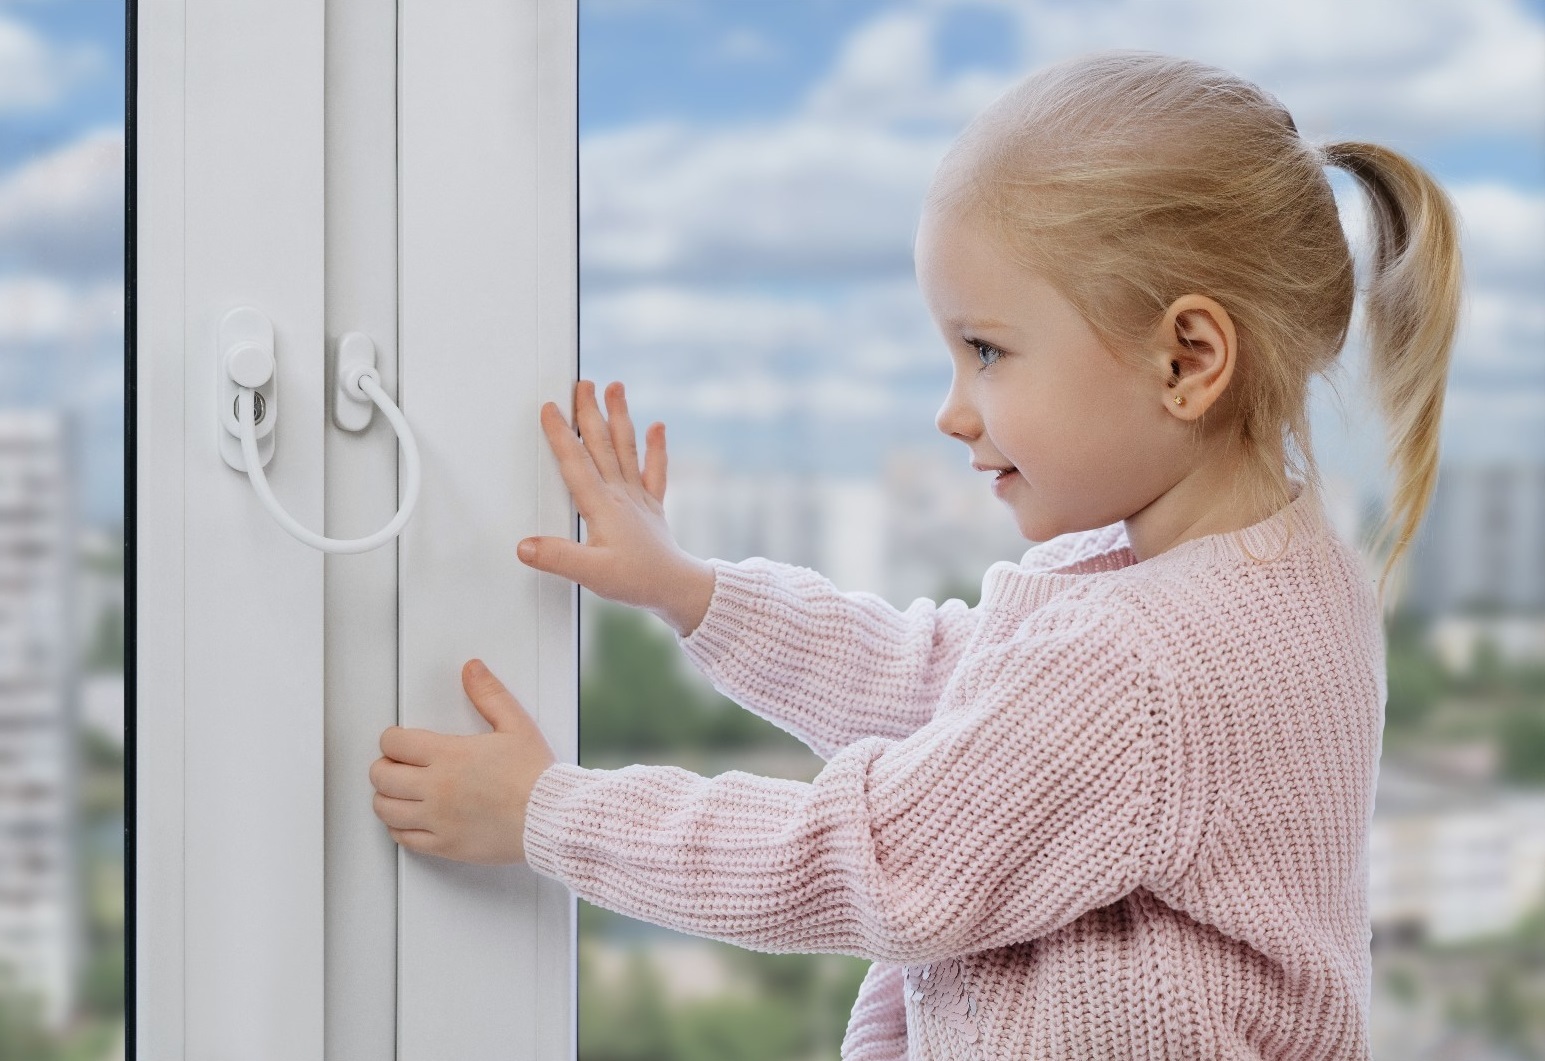 Как обезопасить окна от детей: защита, замки, блокировки